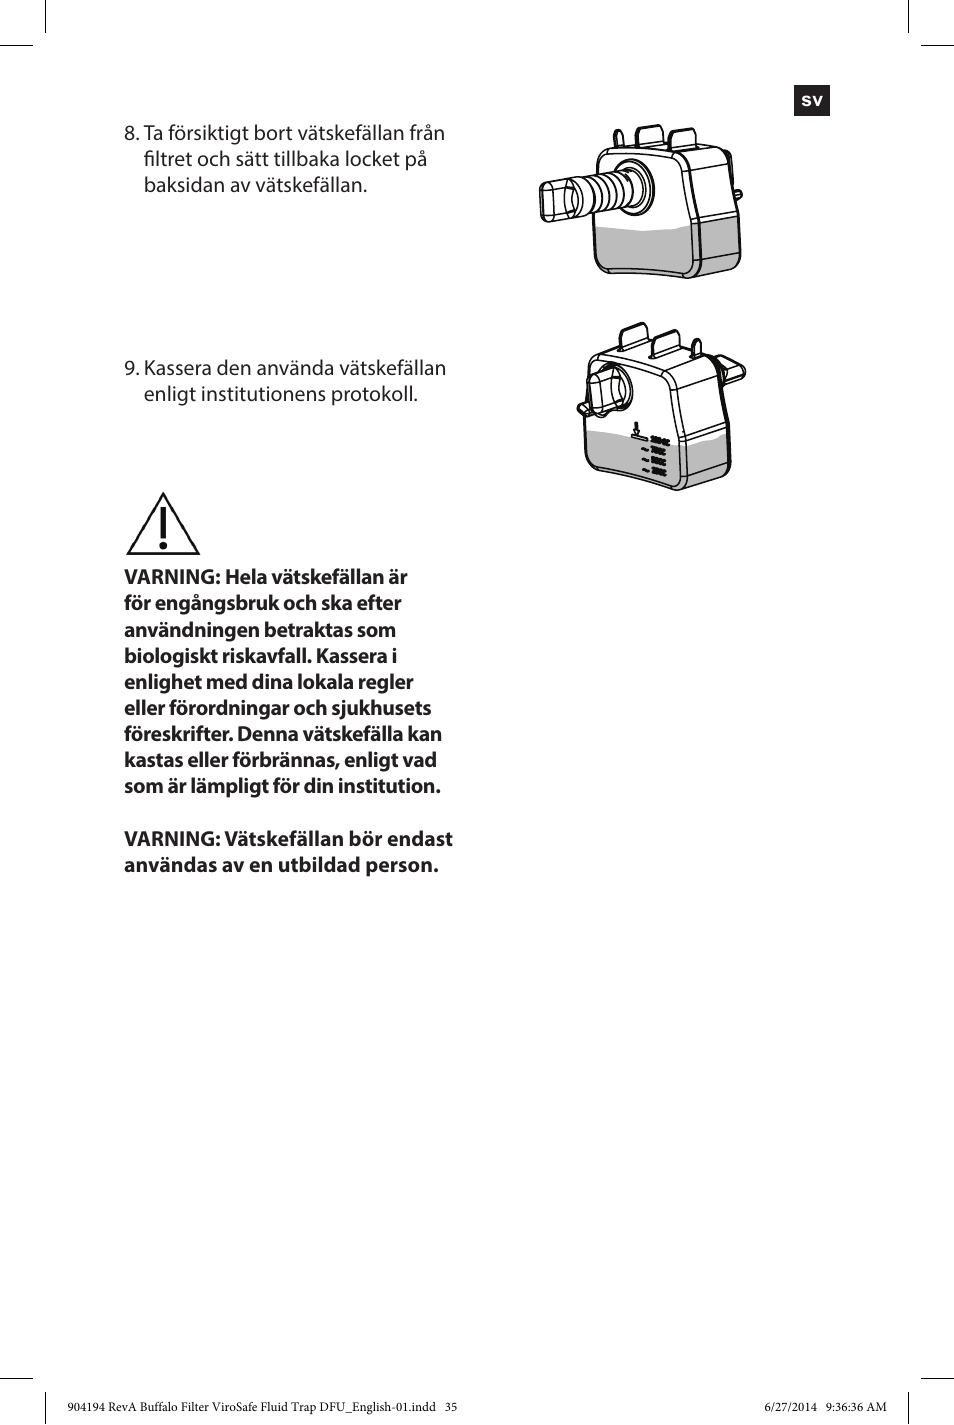 kerne sandsynligt børste Buffalo Filter ViroSafe Fluid Trap User Manual | Page 35 / 40